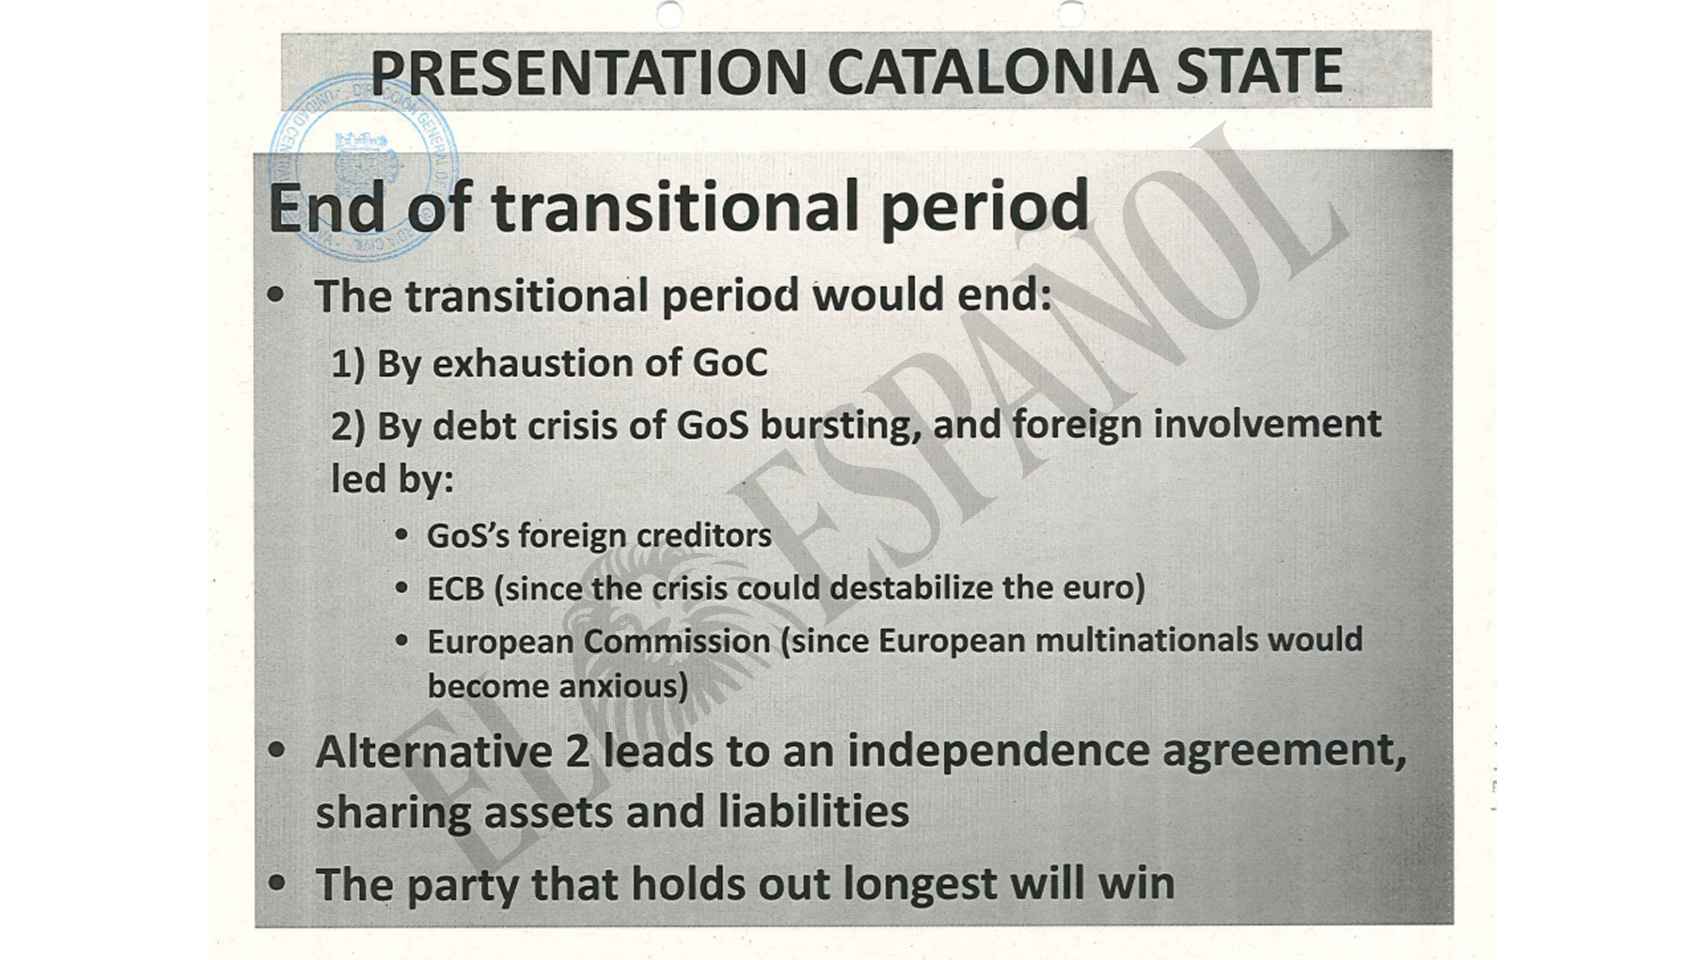 El documento recoge el objetivo de provocar una crisis de deuda para obligar a España a negociar la independencia.